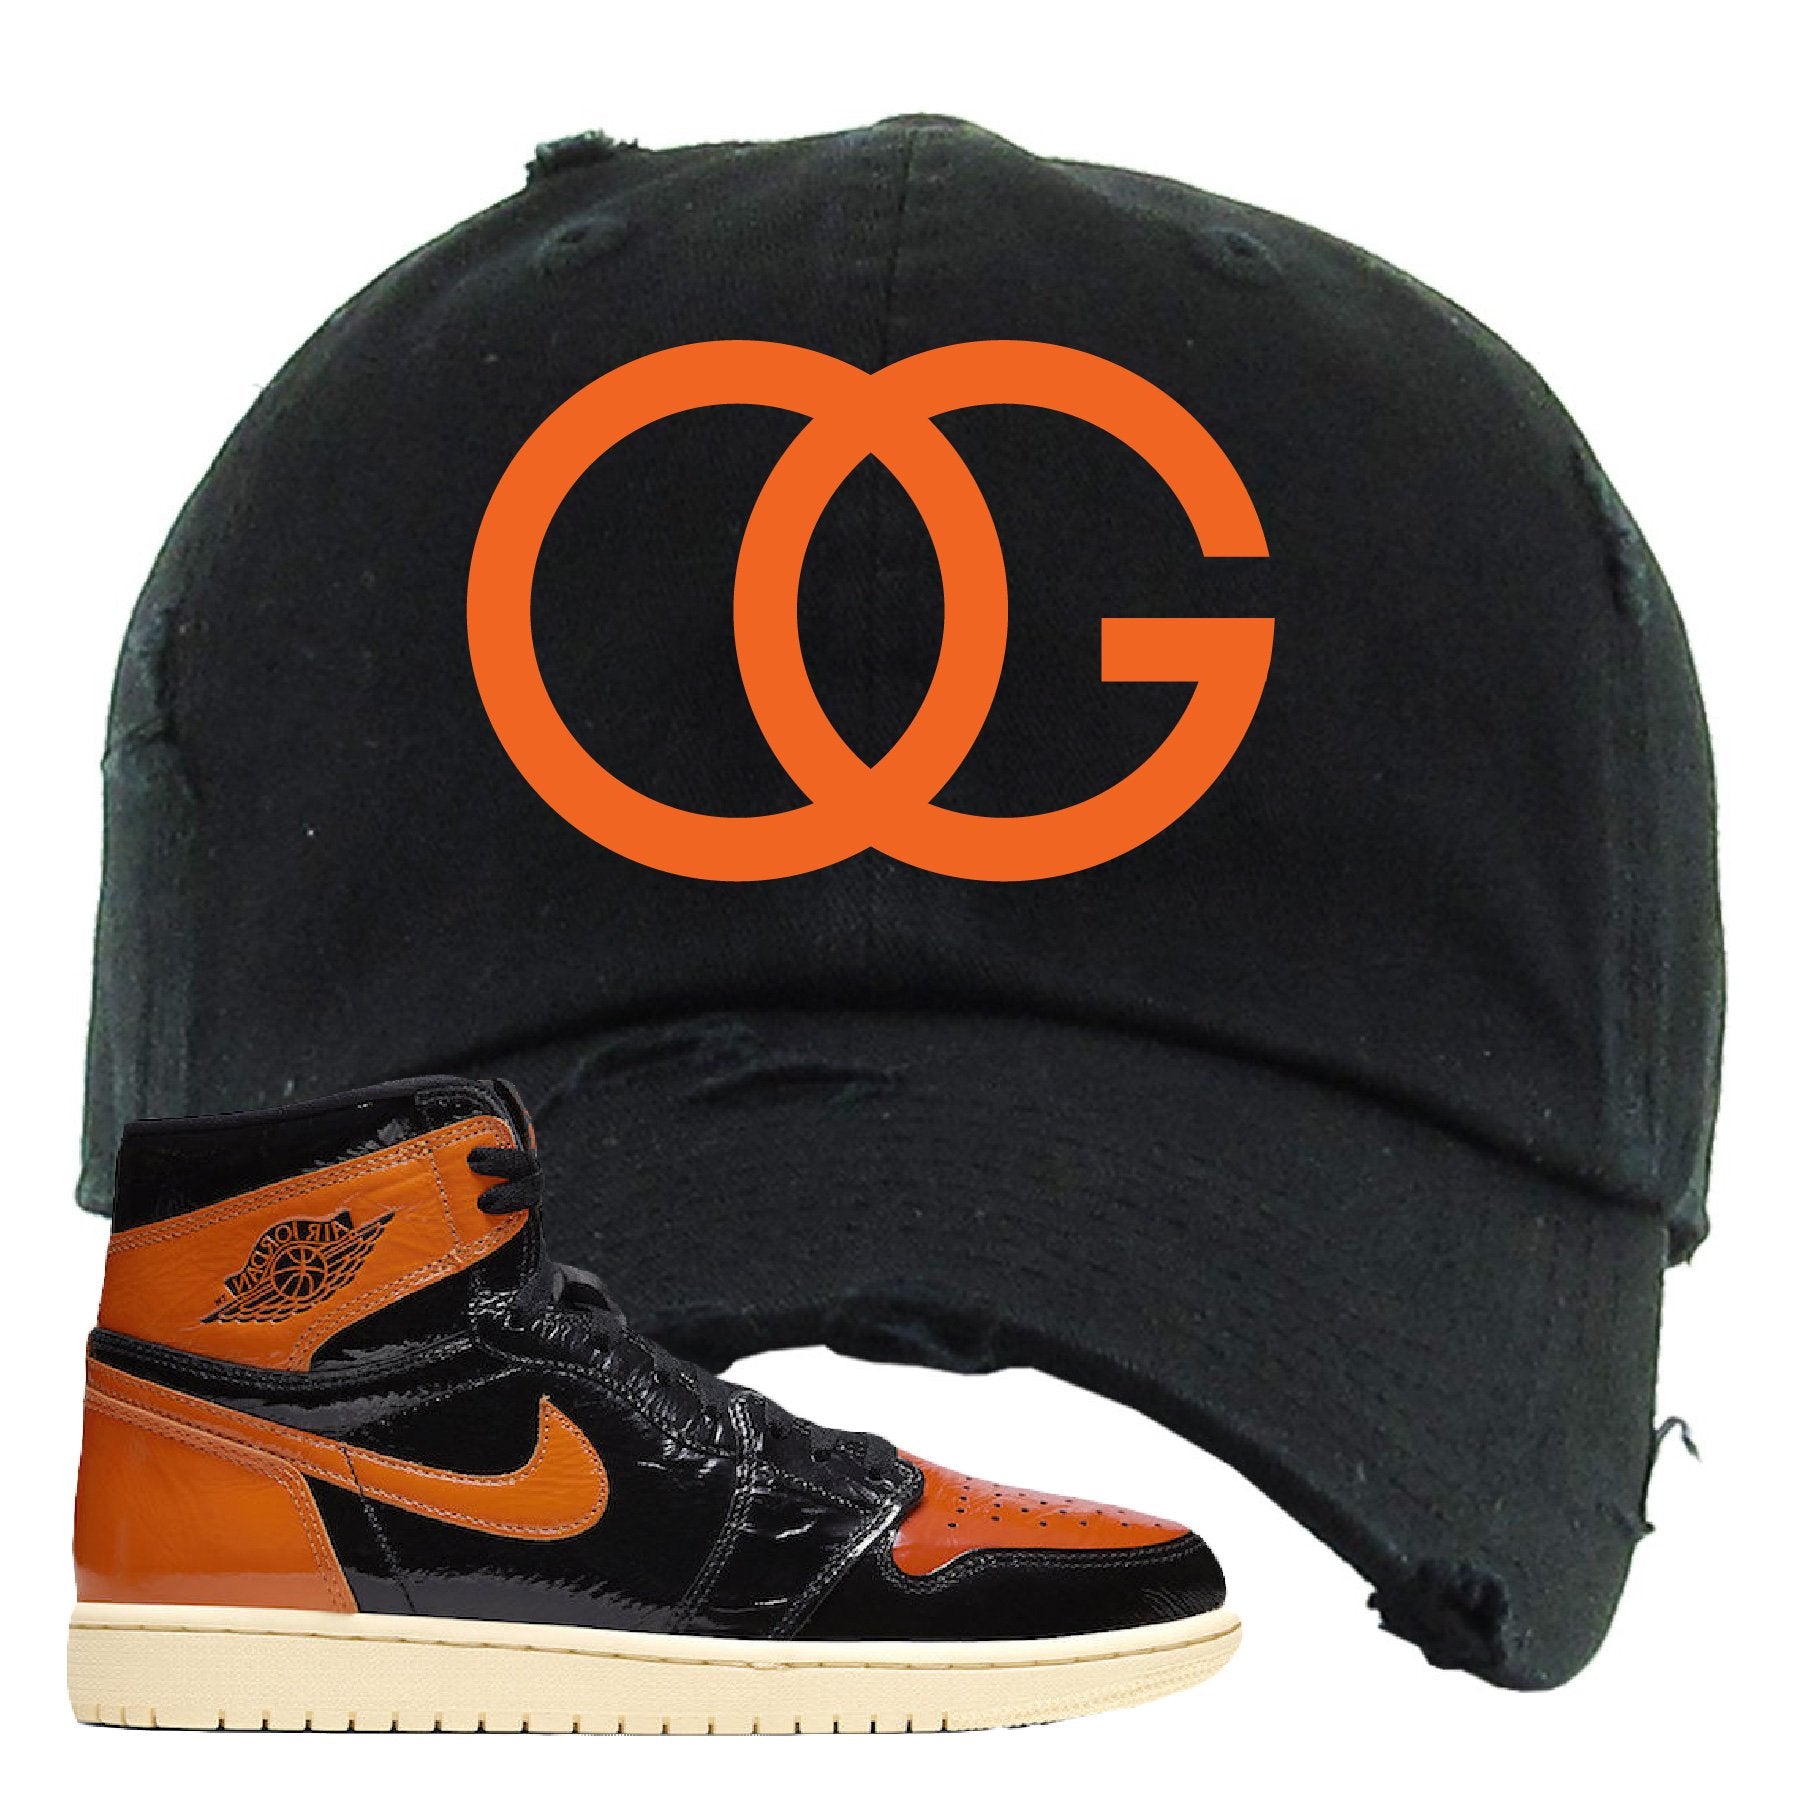 Jordan 1 Shattered Backboard OG Black Sneaker Hook Up Distressed Dad Hat